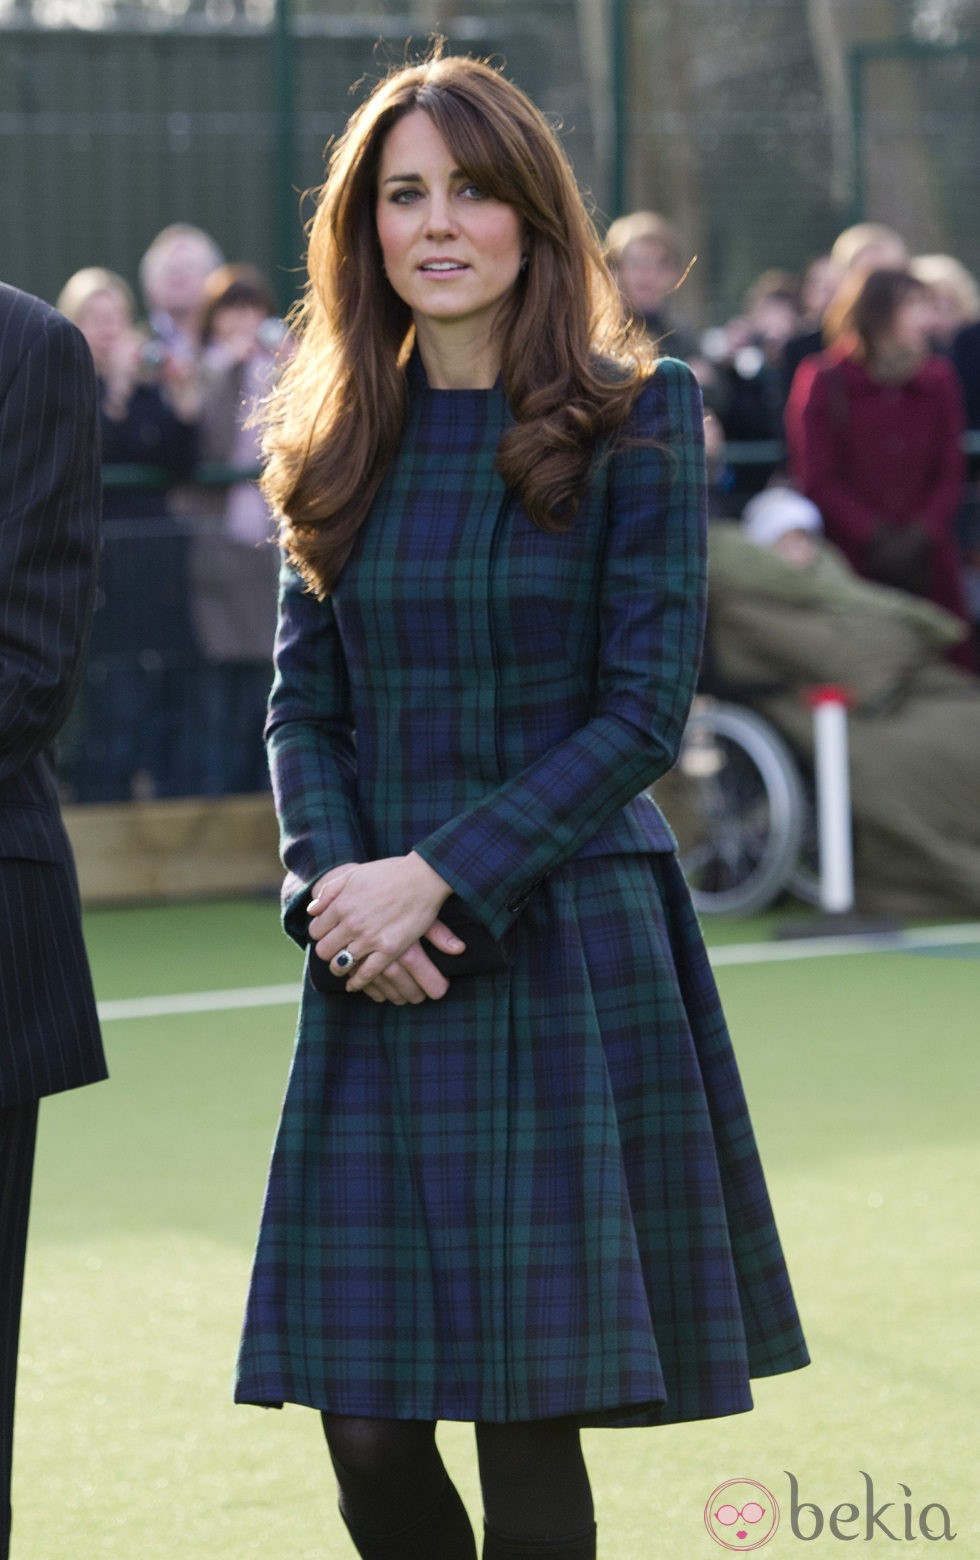 Última aparición de Kate Middleton antes de anunciar su embarazo